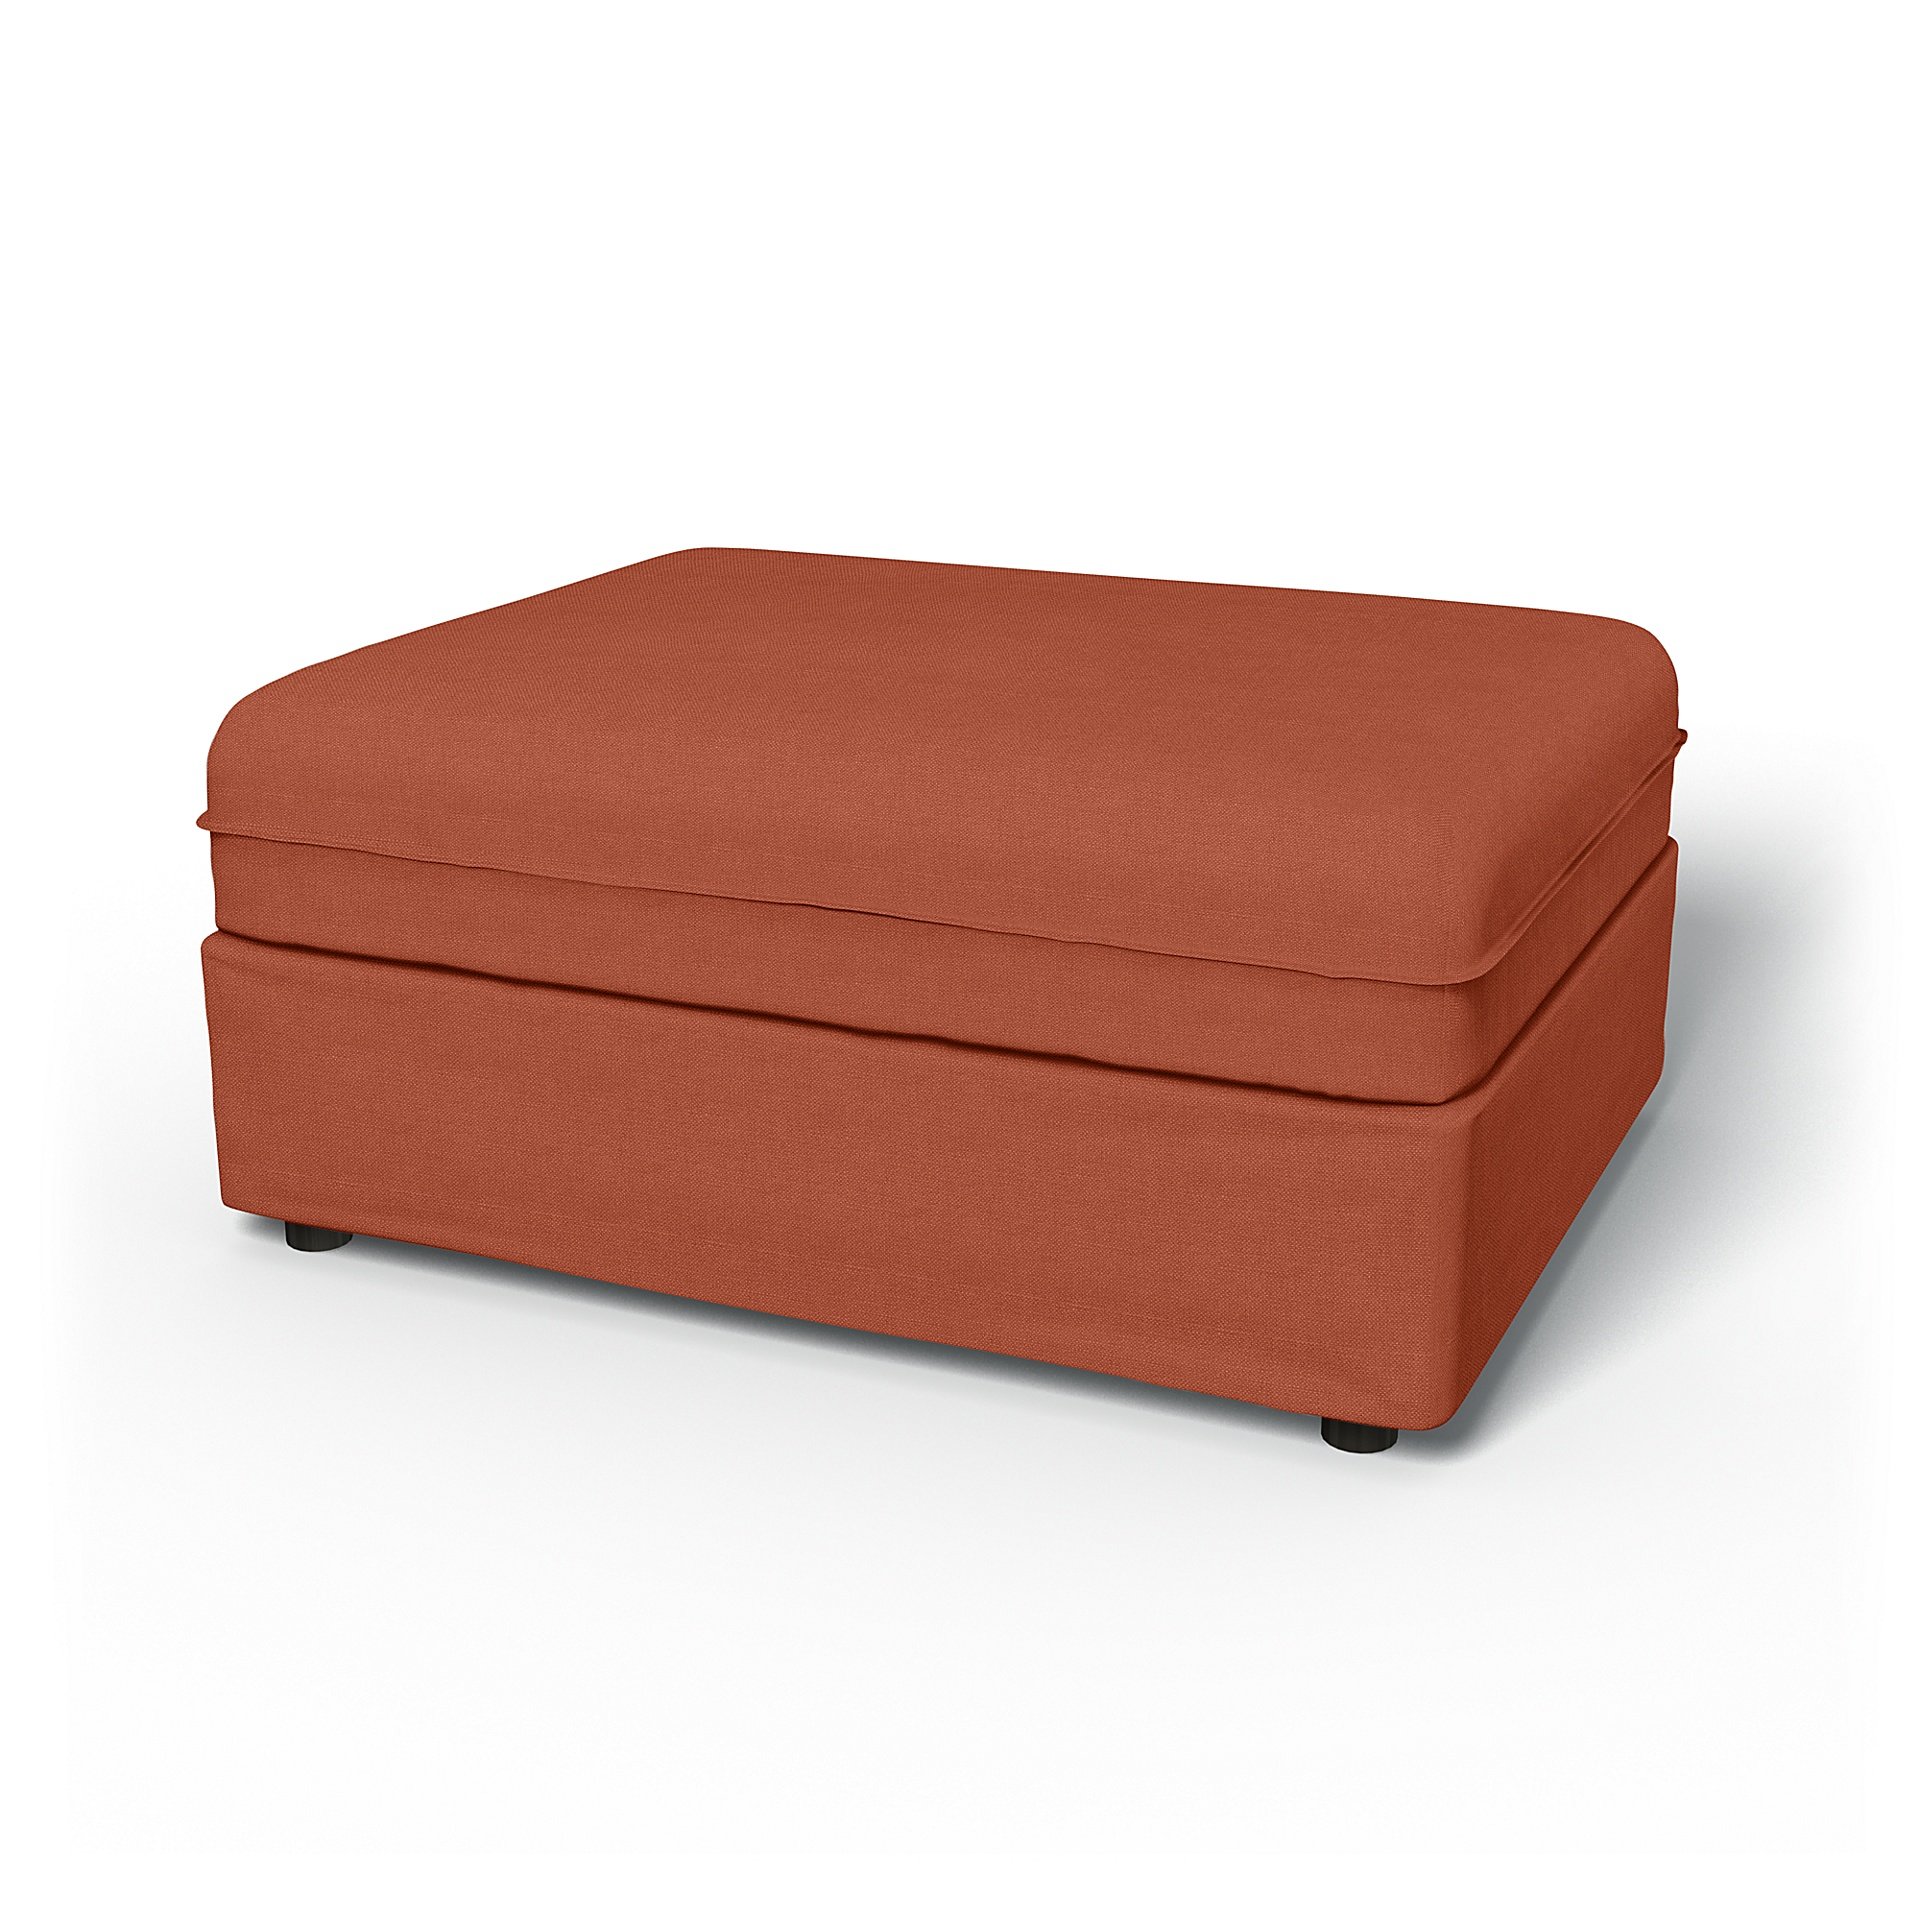 IKEA - Vallentuna Seat Module Cover 100x80cm 39x32in, Burnt Orange, Linen - Bemz